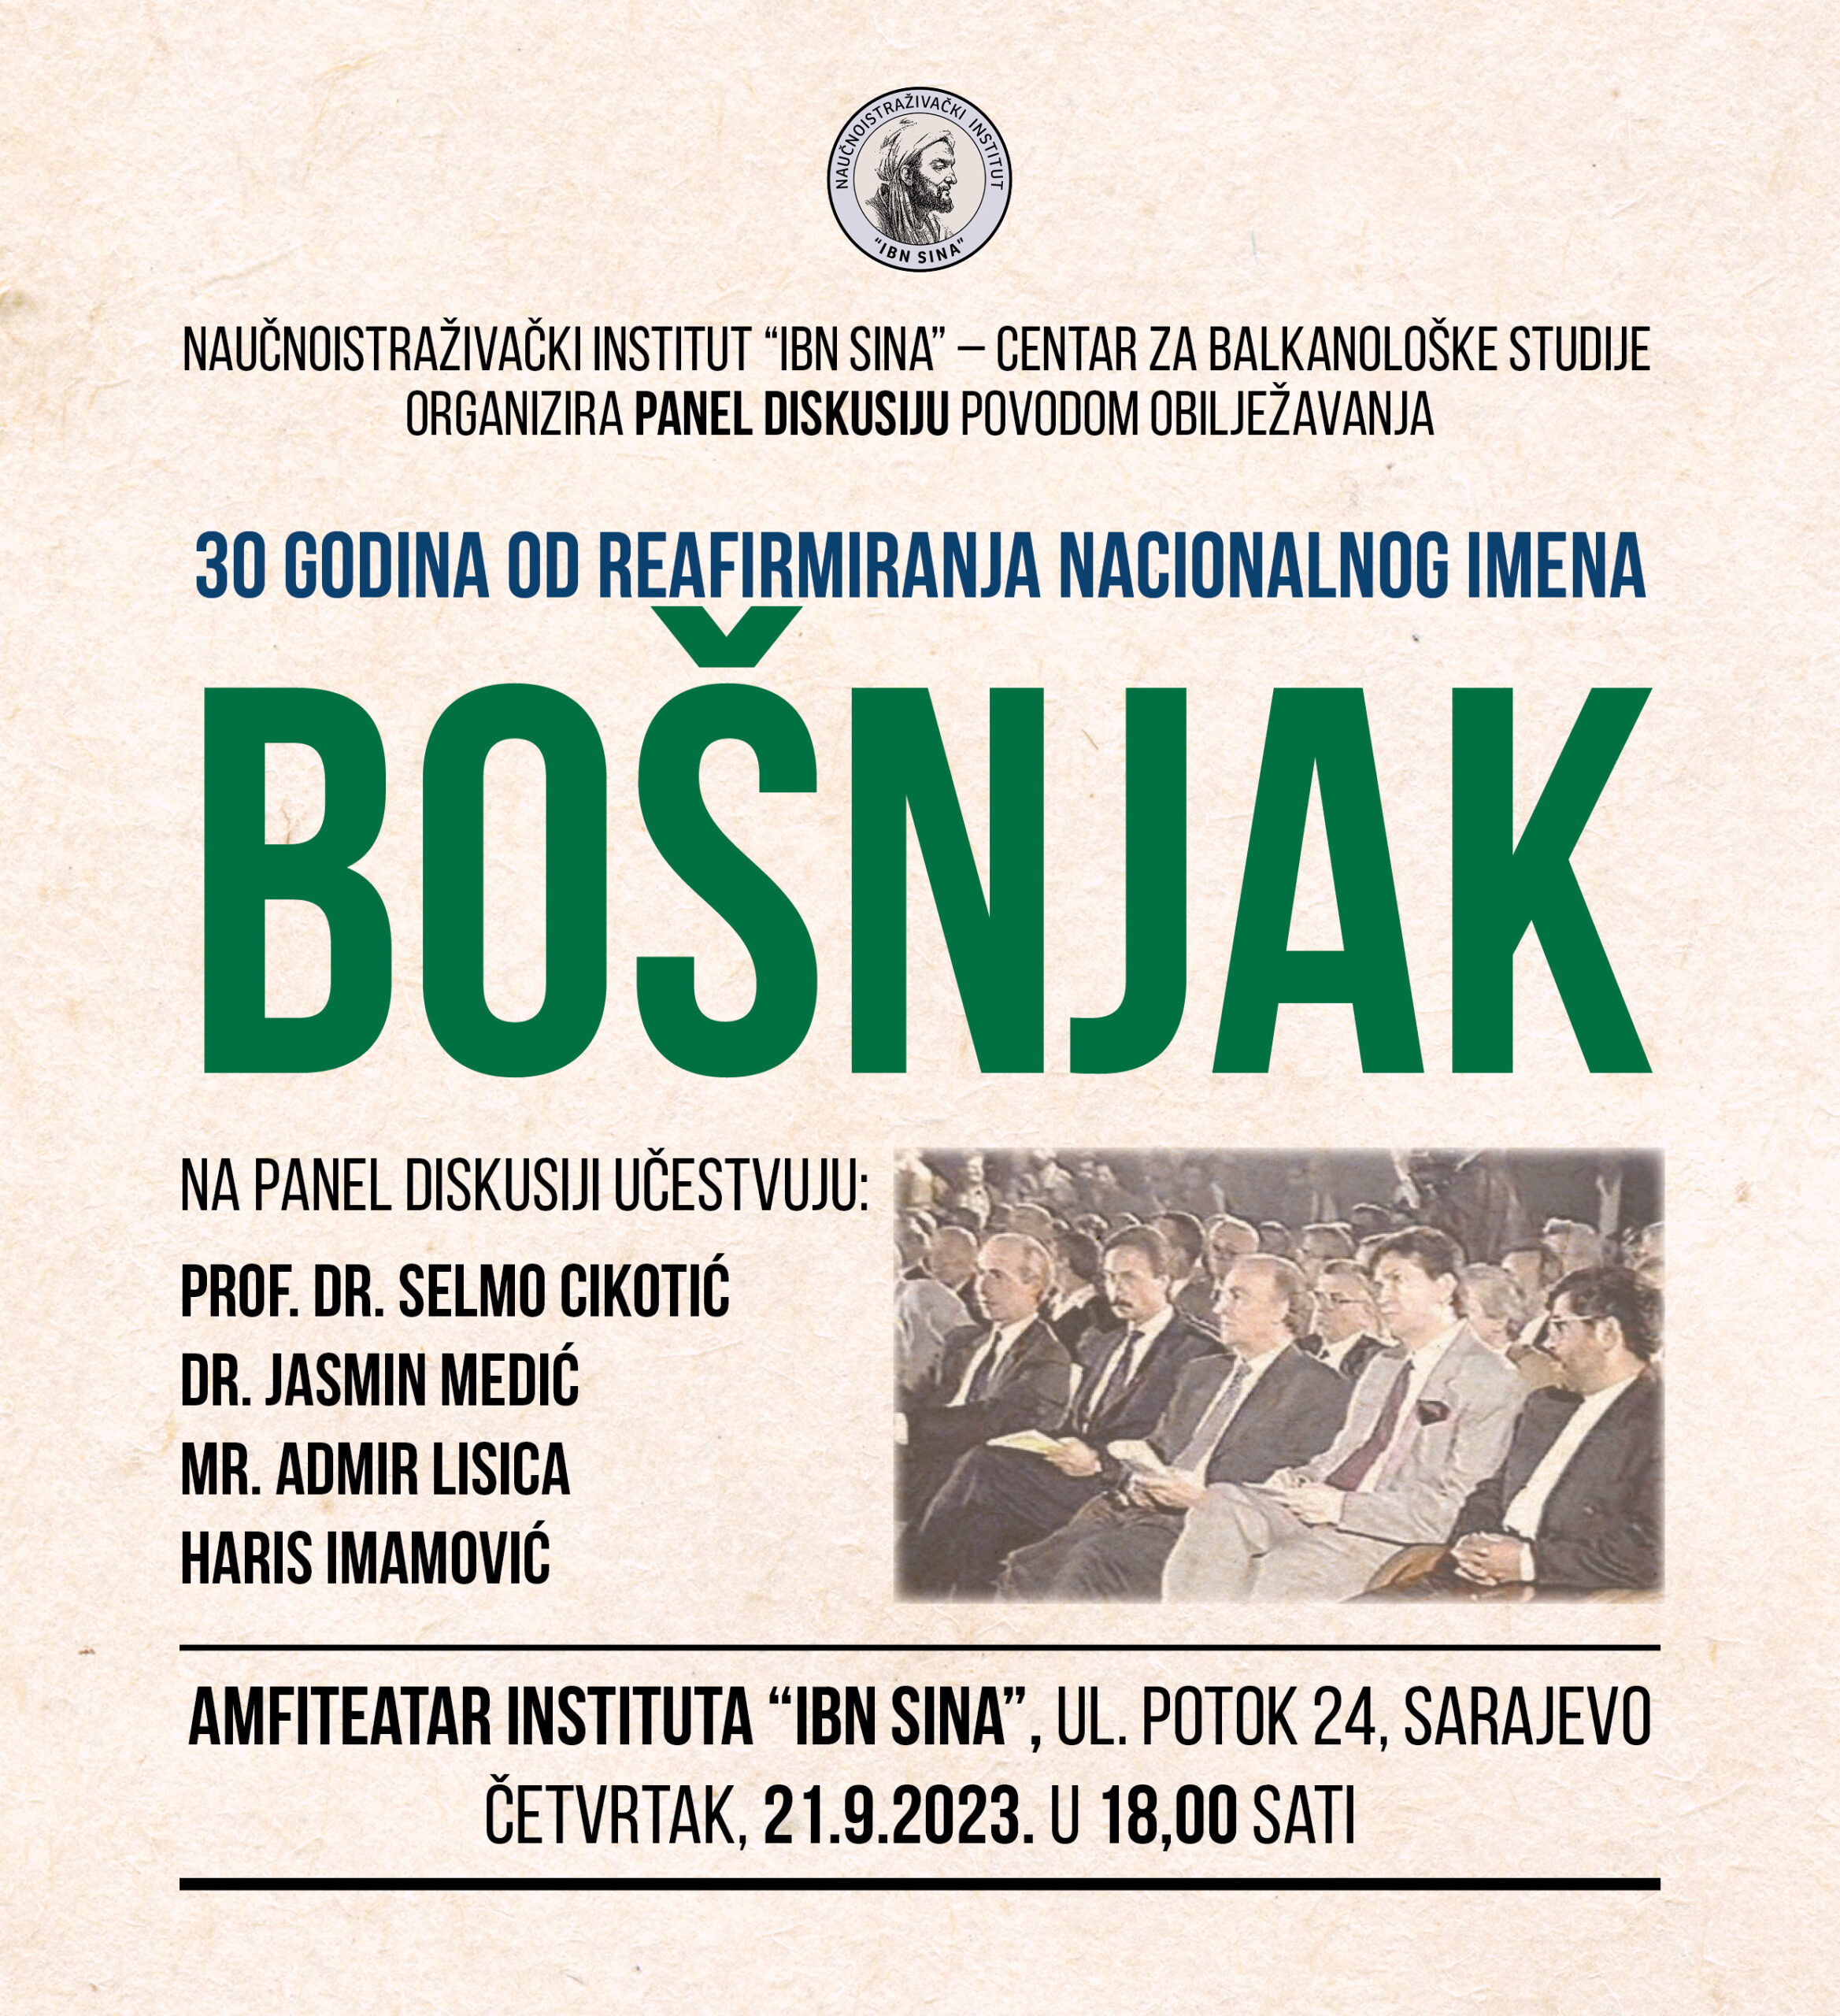 Centar za balkanološke studije Naučnoistraživačkog instituta “Ibn Sina” organizuje panel diskusiju povodom obilježavanja 30 godina od reafirmiranja nacionalnog imena Bošnjak